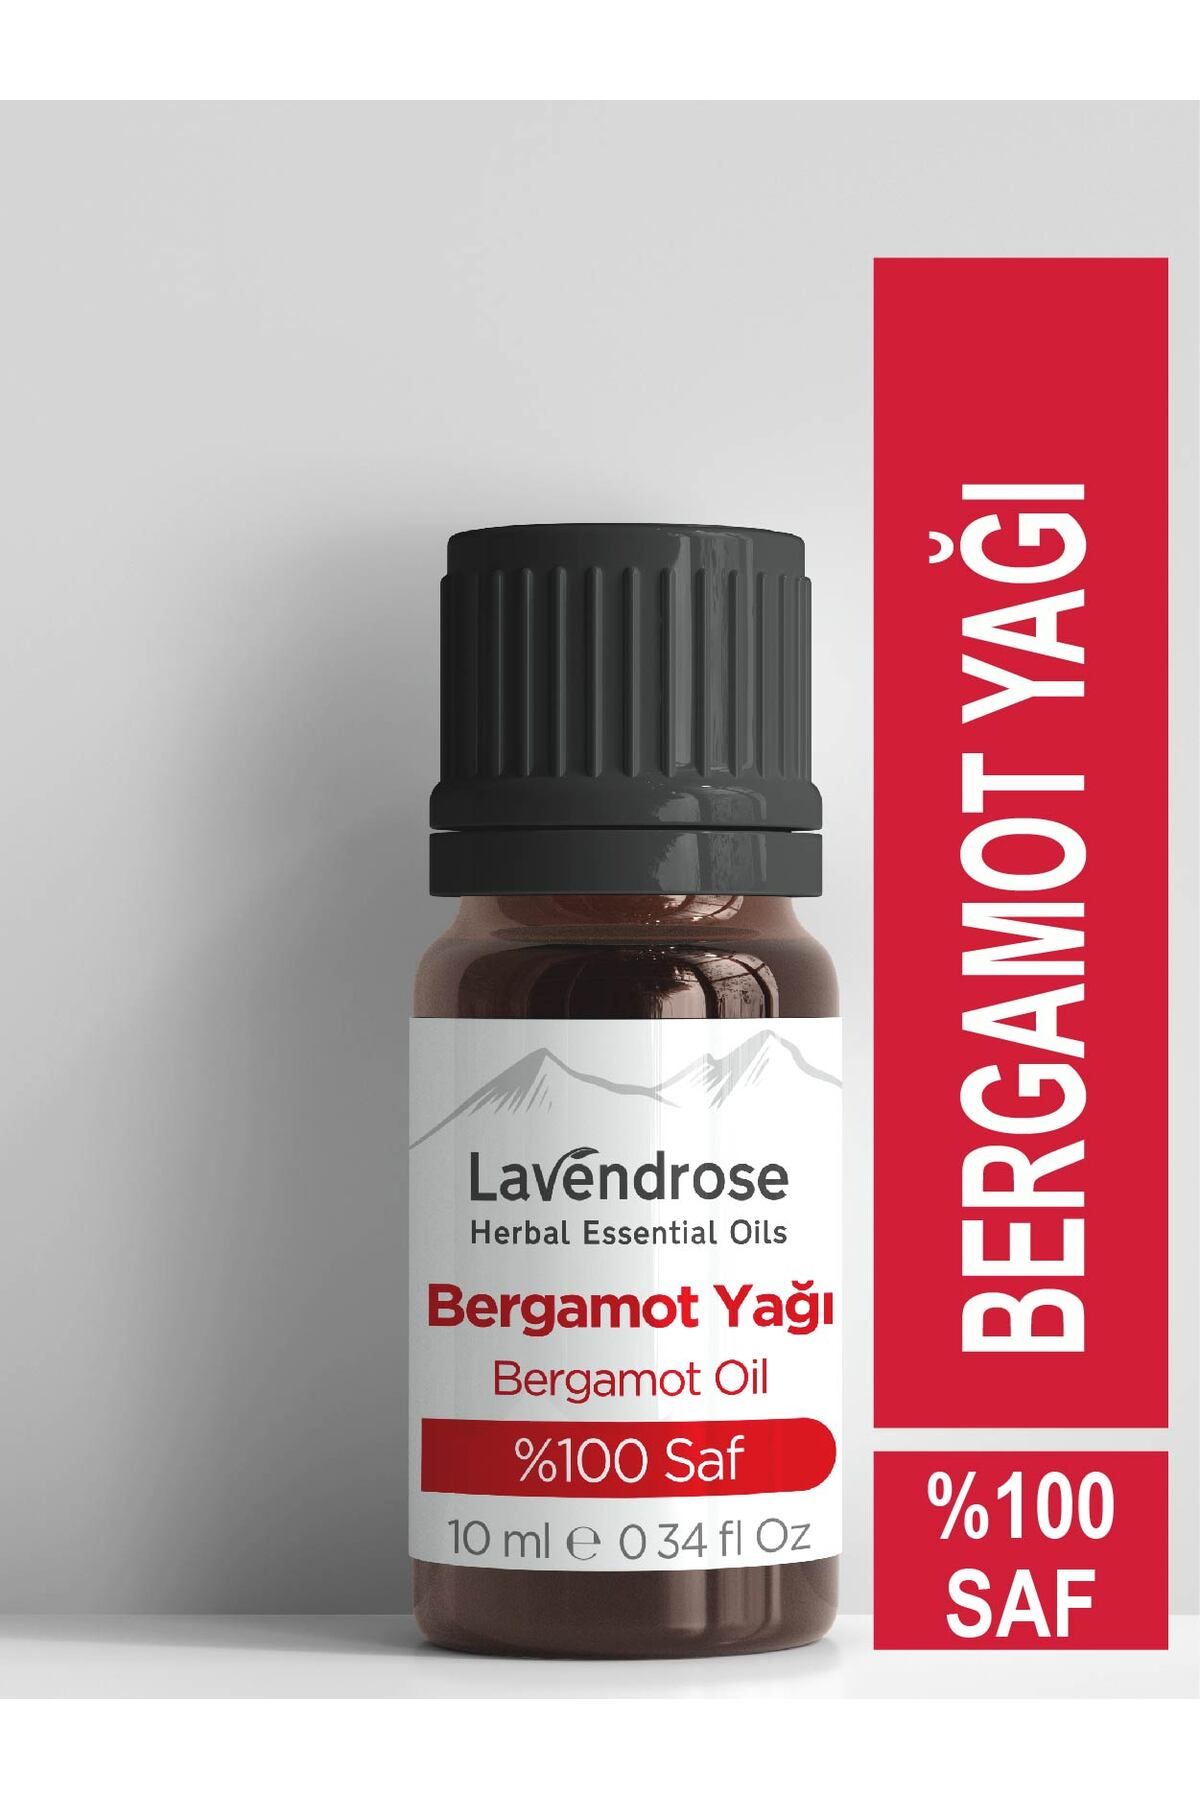 Lavendrose Bergamot Yağı %100 Saf- Bitkisel Aromaterapi Bergamot Uçucu Yağı 10ml- Bergamot Oil -difizöre Uygun